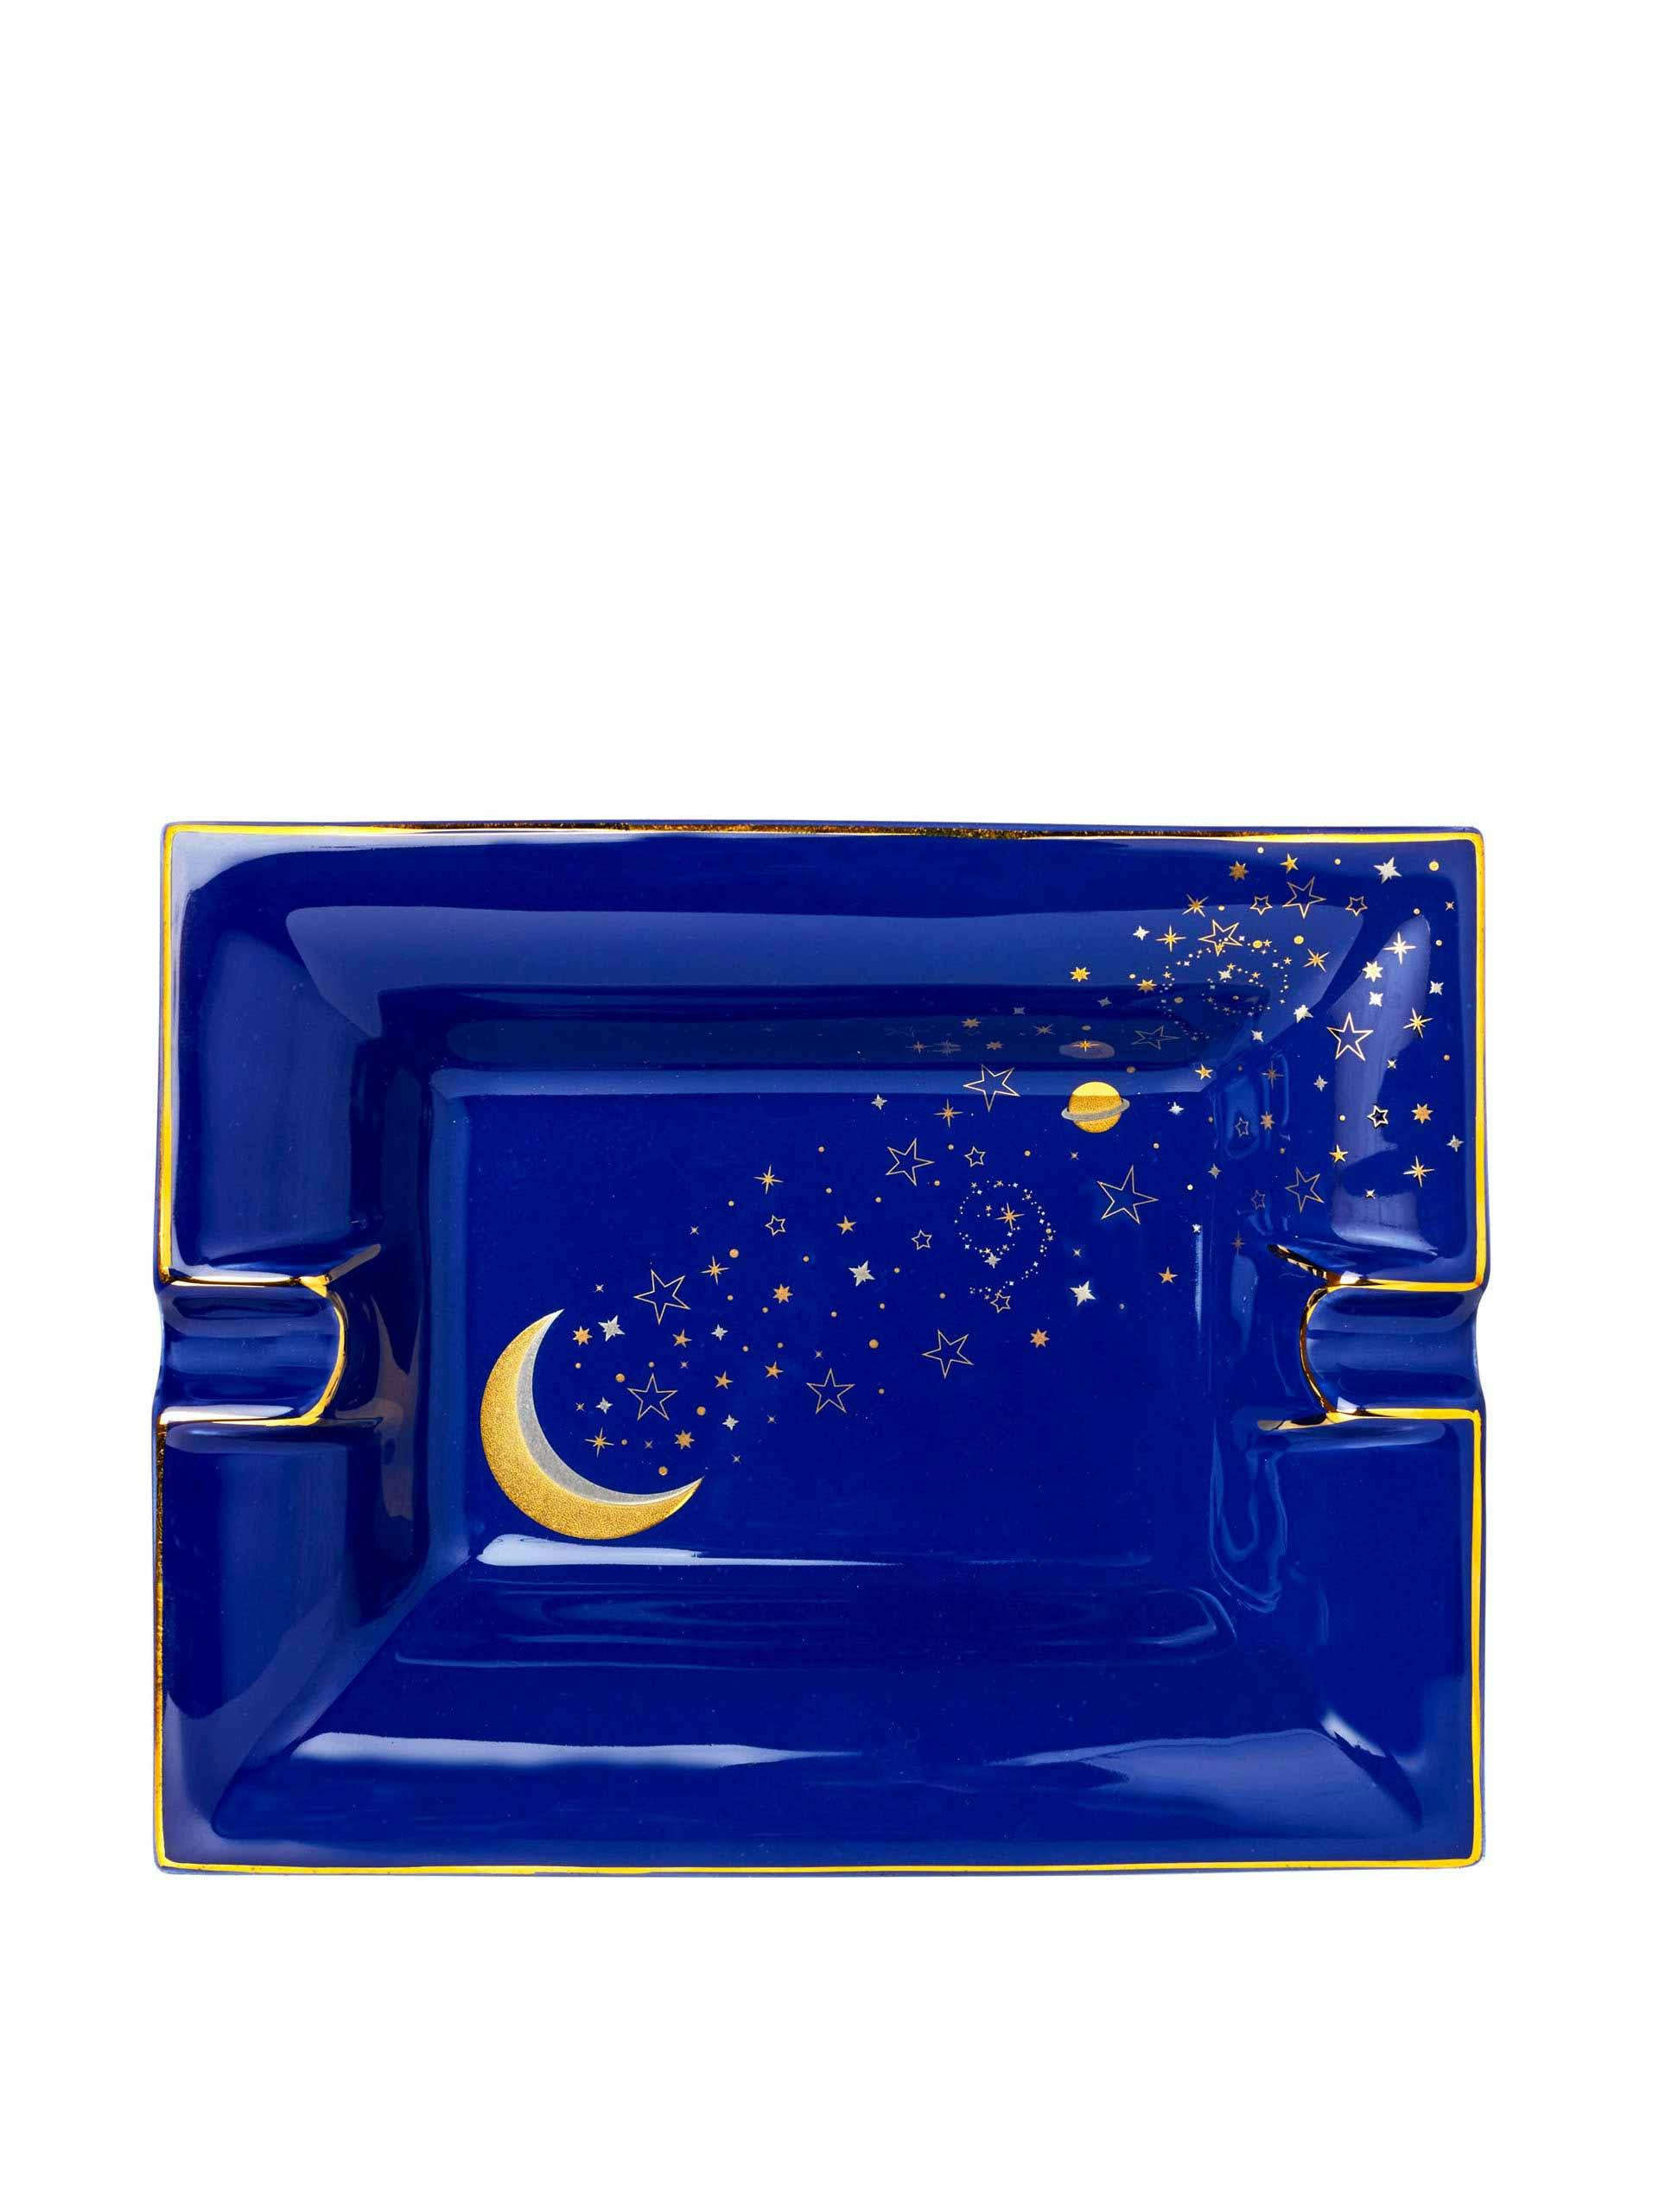 Large blue Luna trinket tray/ashtray